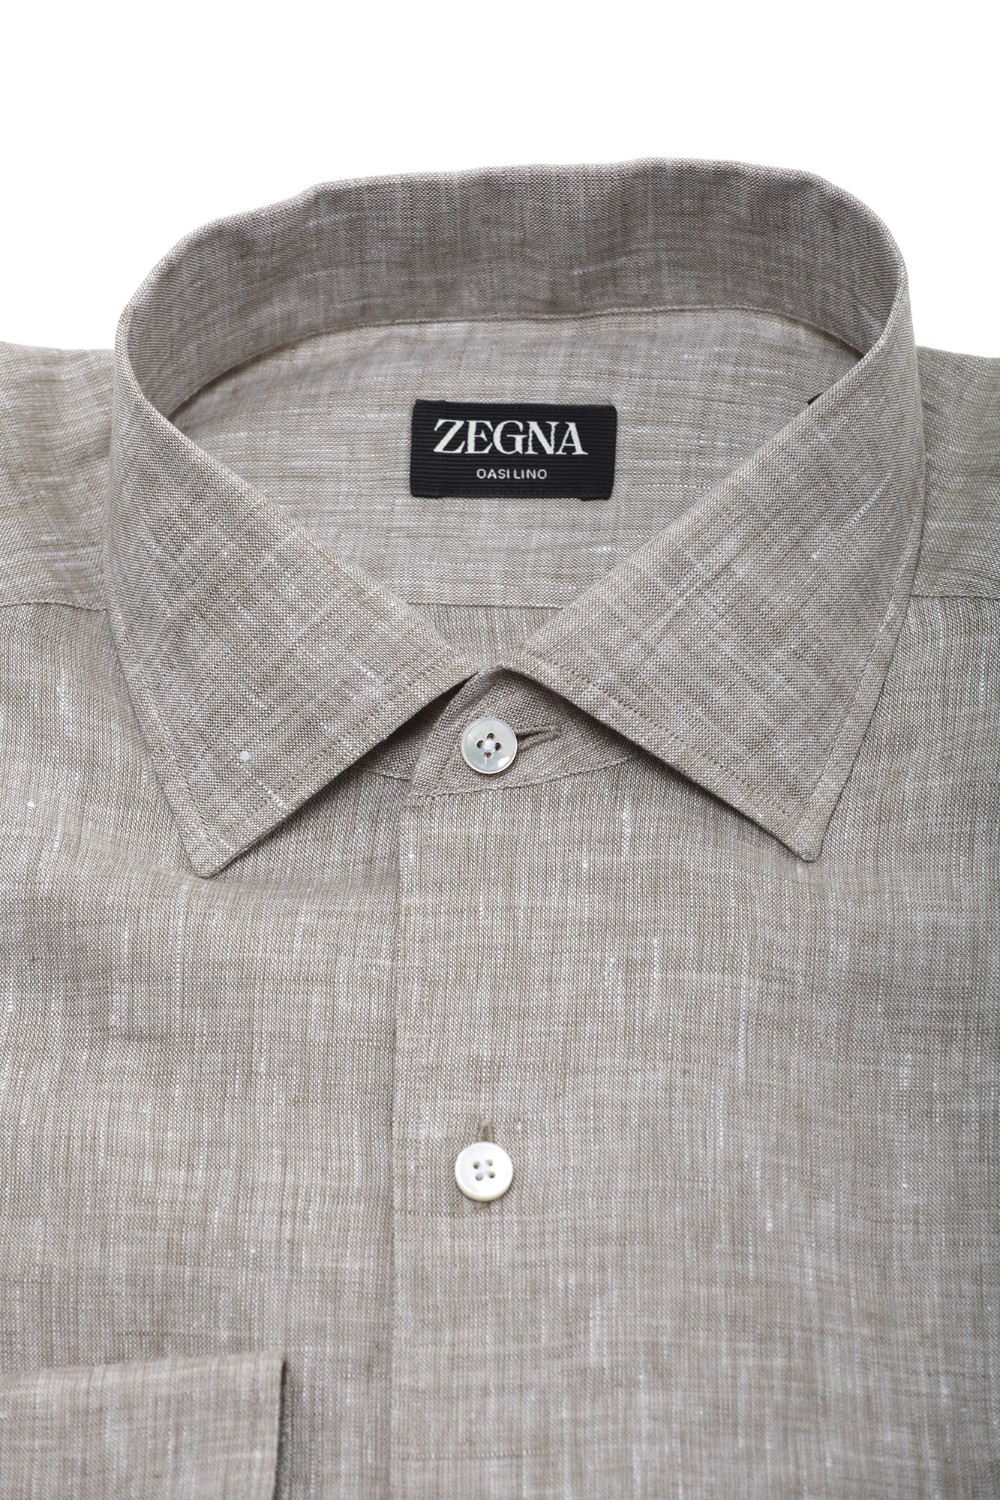 shop ZEGNA  Camicia: Zegna camicia in lino.
Colletto.
Maniche lunghe.
Chiusura con bottoni.
Vestibilità regolare.
Composizione: 100% Lino.
Made in Italy.. UDX31A7 SR03-009 number 2769